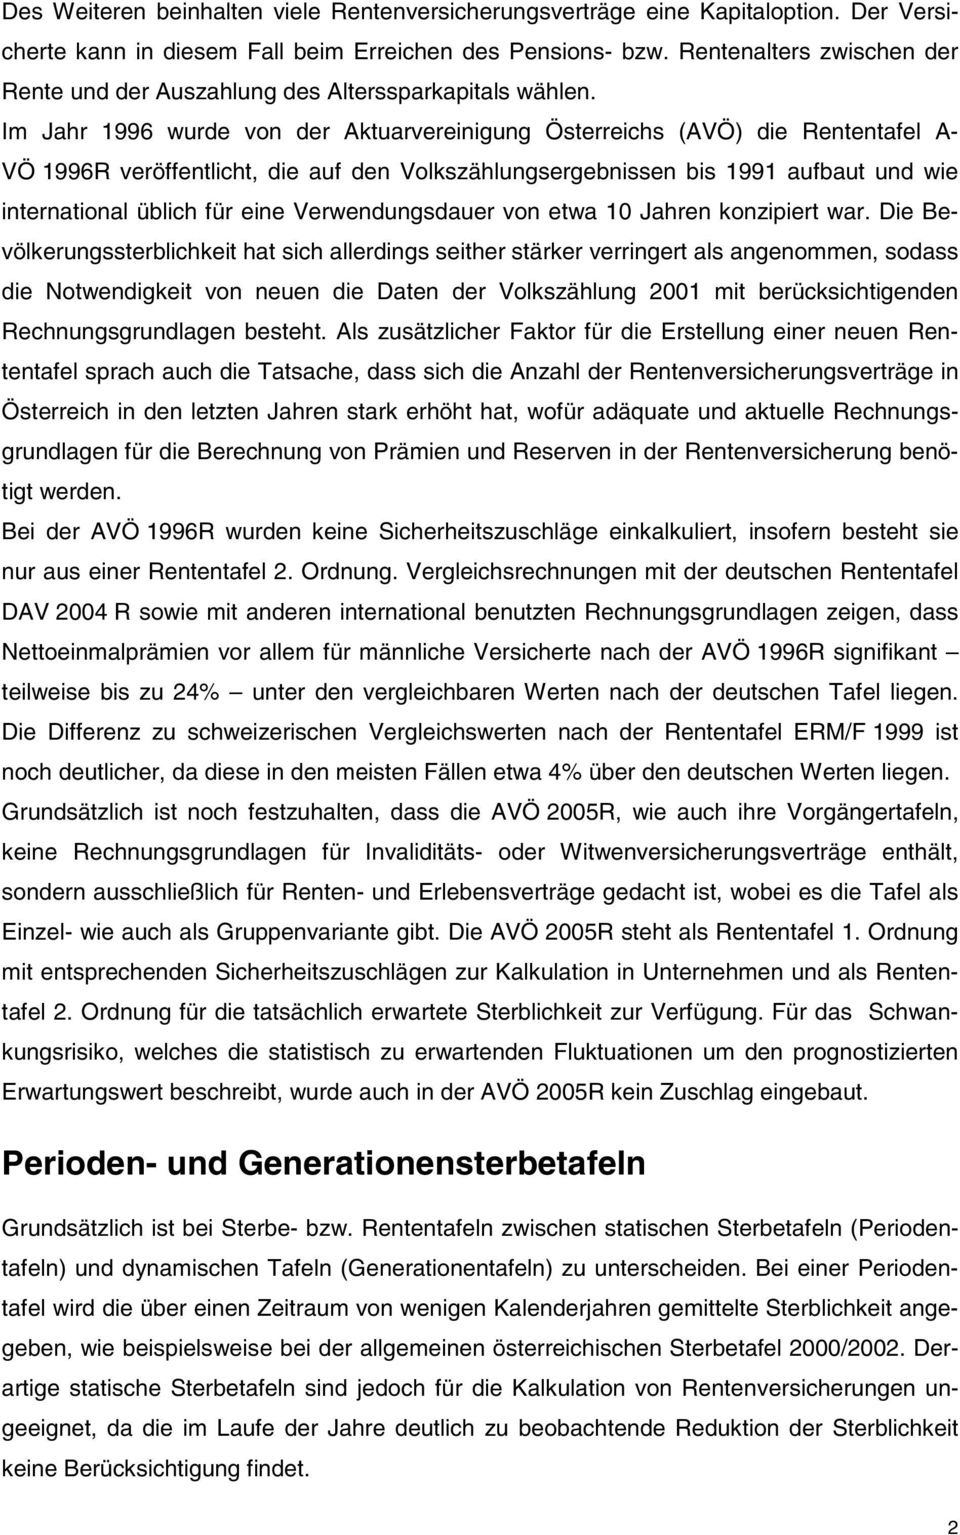 Im Jahr 1996 wurde von der Aktuarvereinigung Österreichs (AVÖ) die Rententafel A- VÖ 1996R veröffentlicht, die auf den Volkszählungsergebnissen bis 1991 aufbaut und wie international üblich für eine